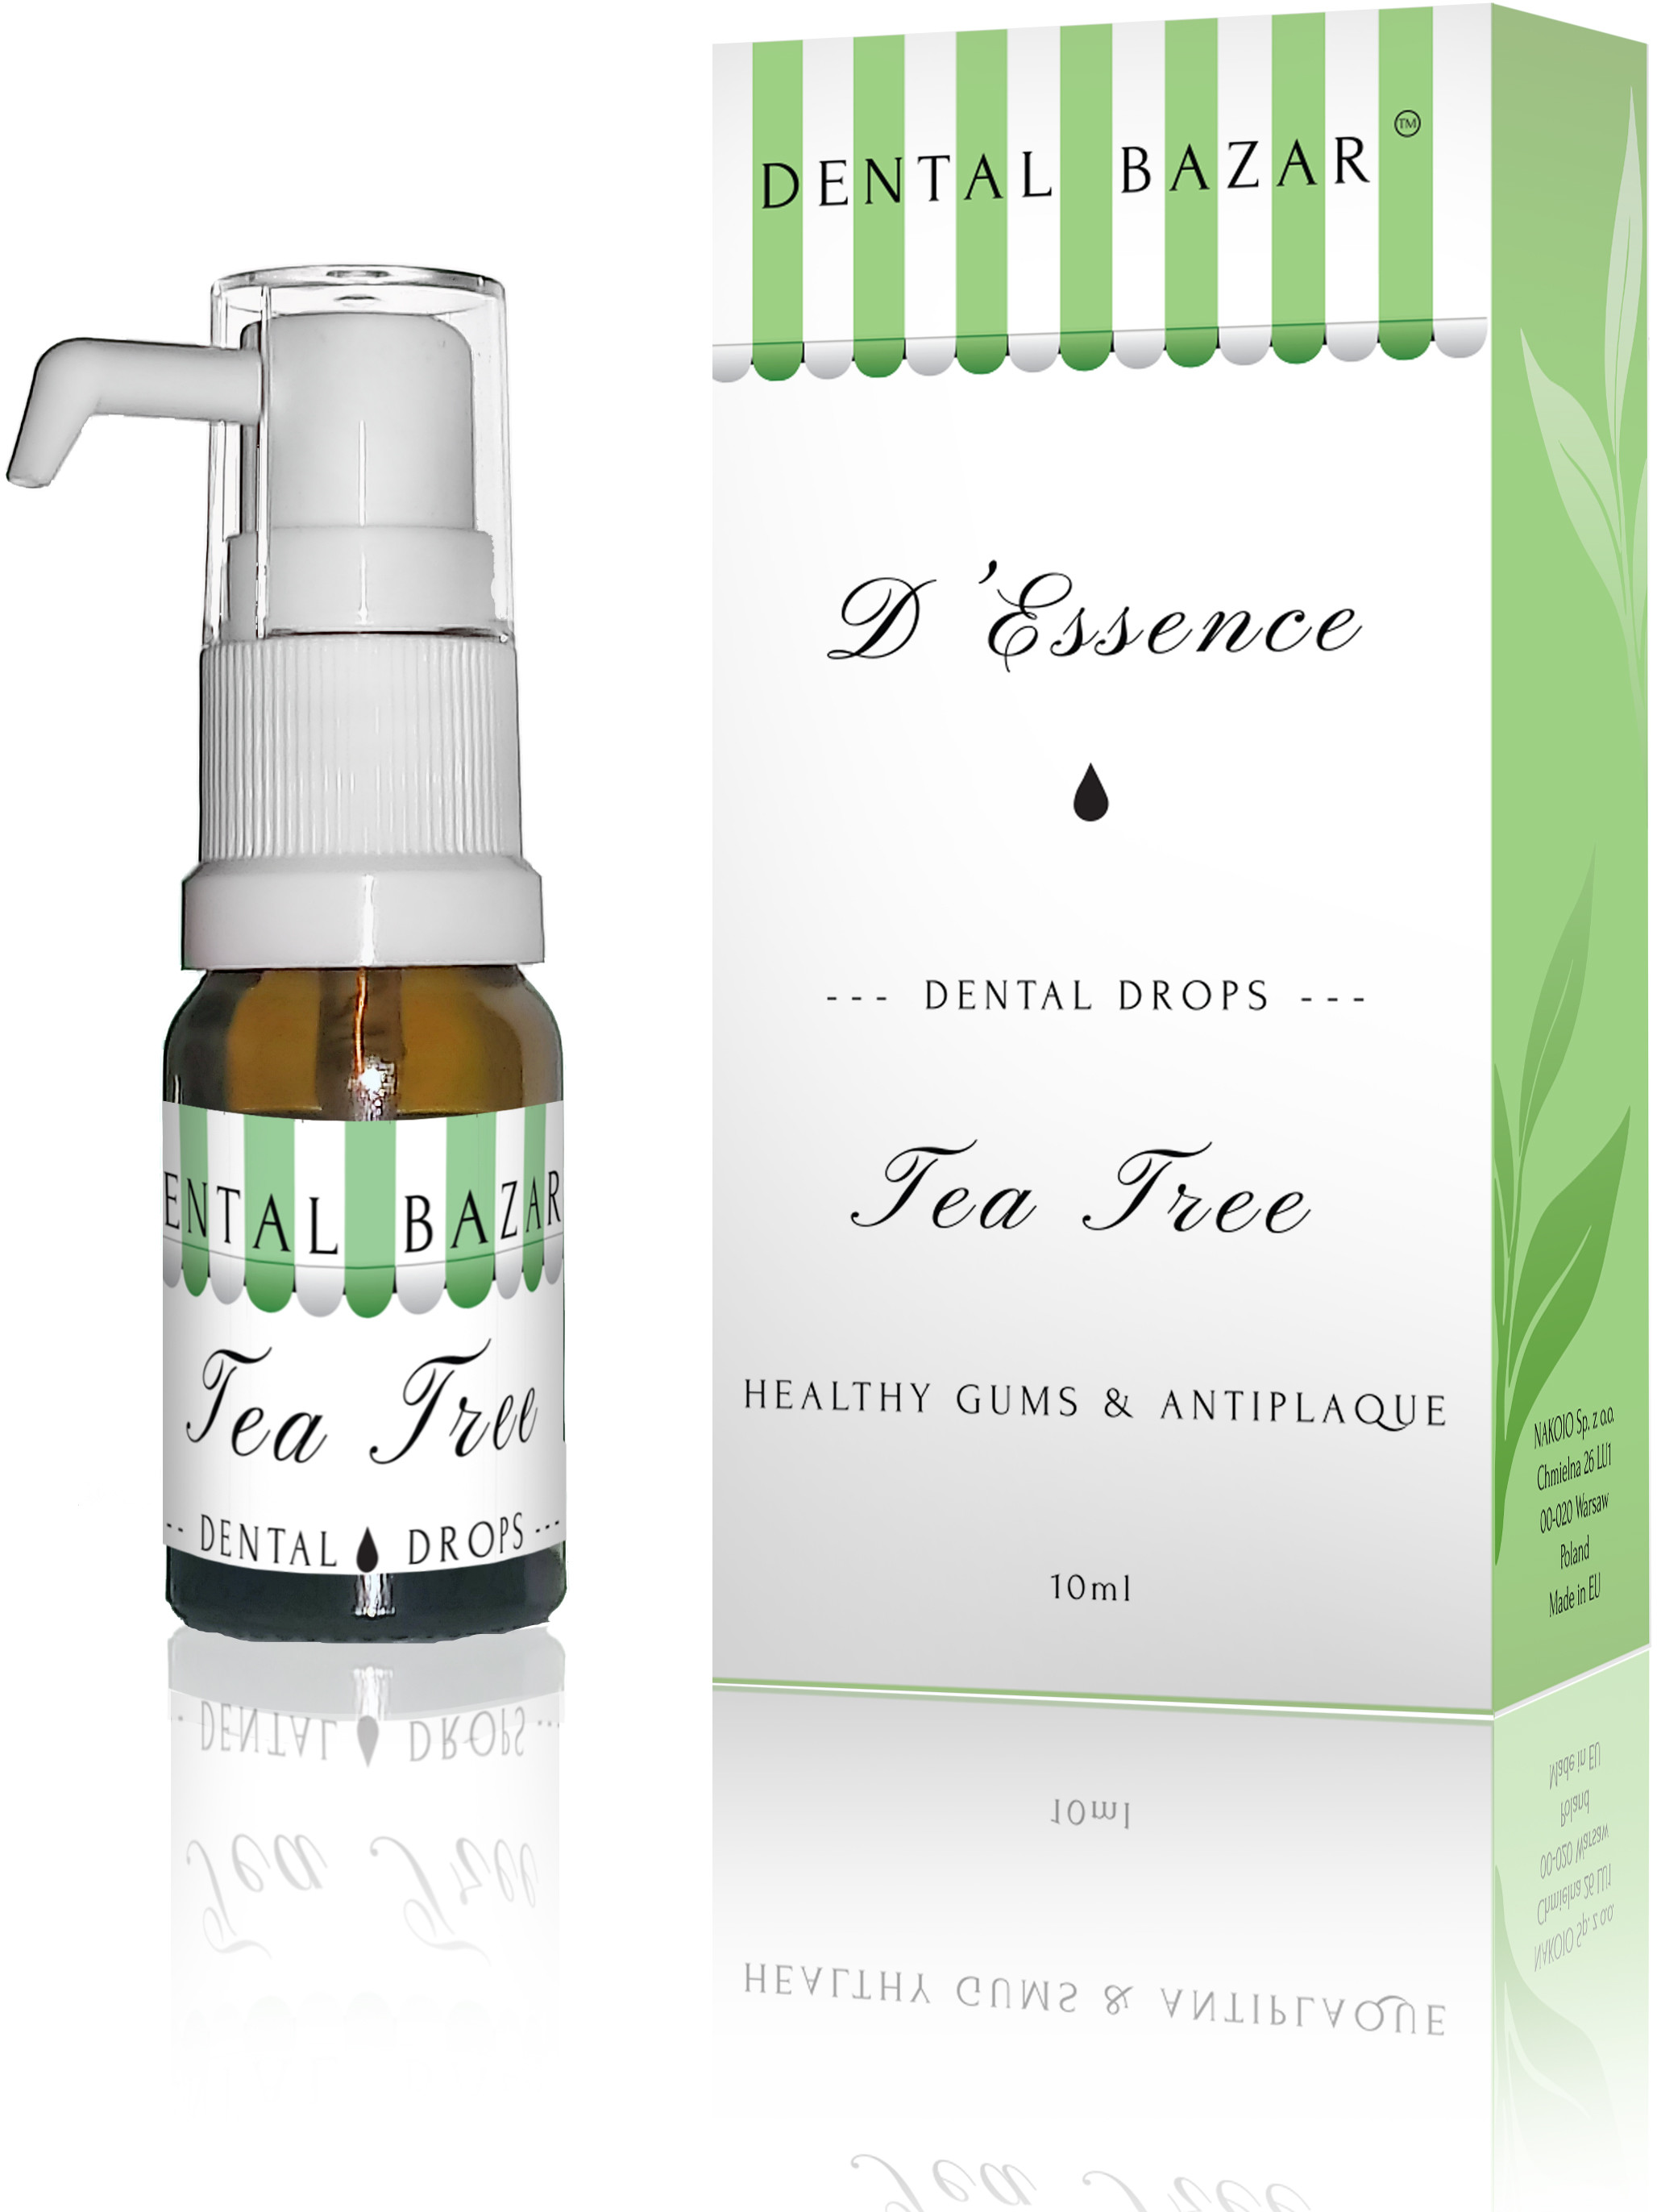 Orthosept DENTAL BAZAR D'Essence Tea Tree - healthy gums & antiplaque - zdrowe dziąsła i przeciw powstawaniu płytki nazębnej 10ml